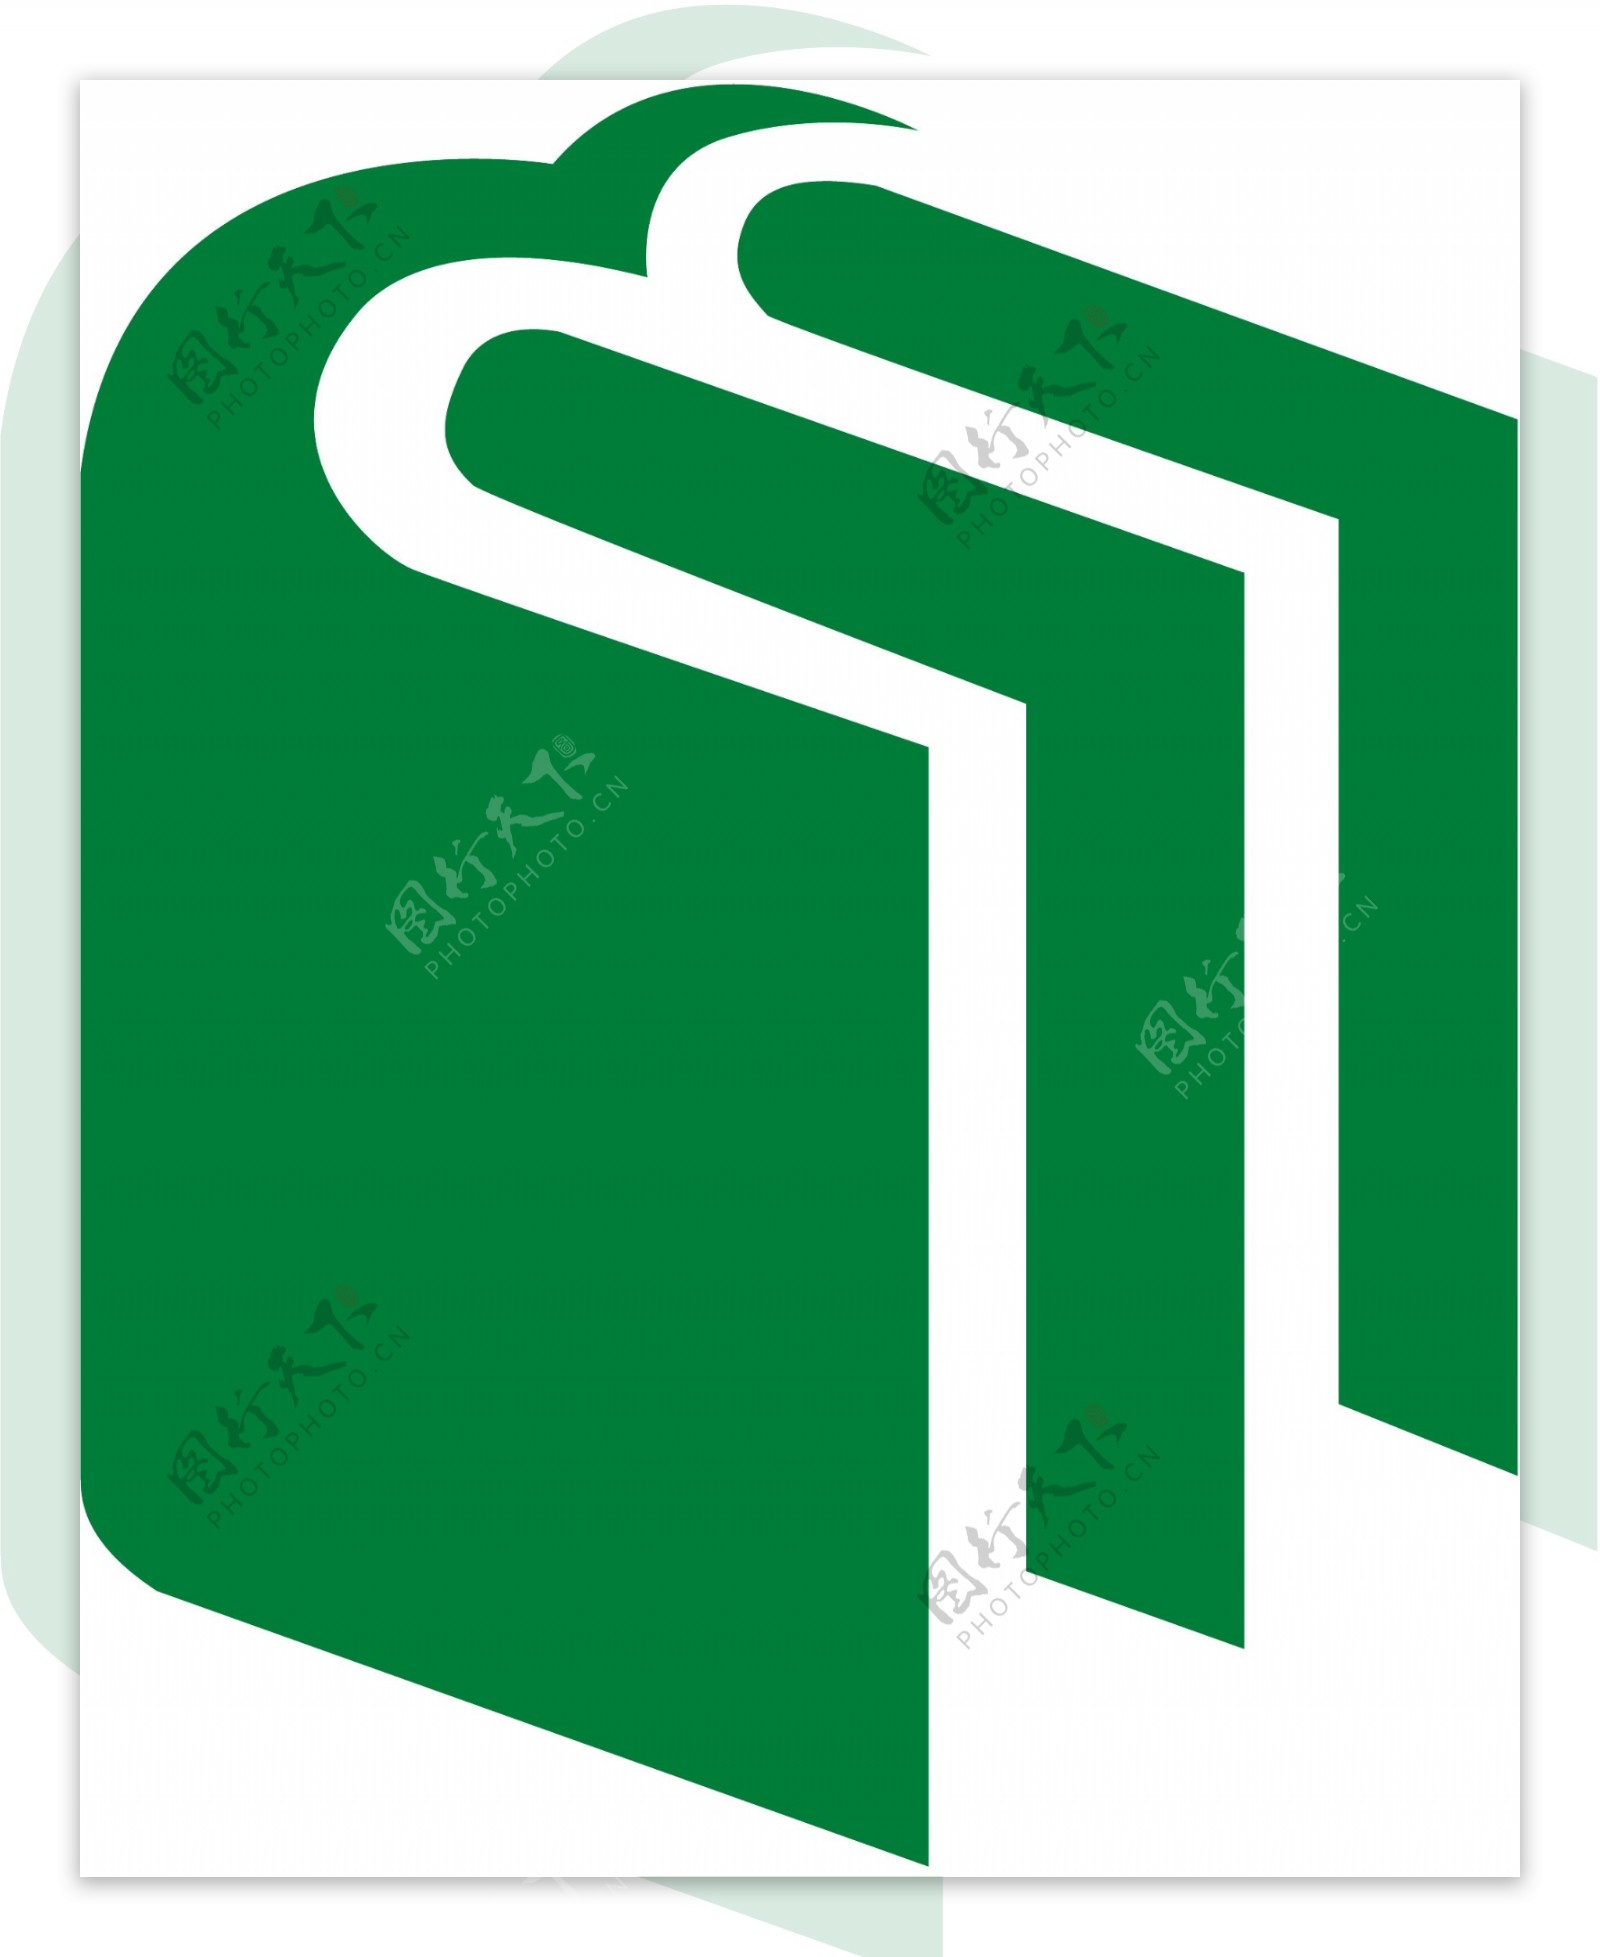 民族出版社logo图片